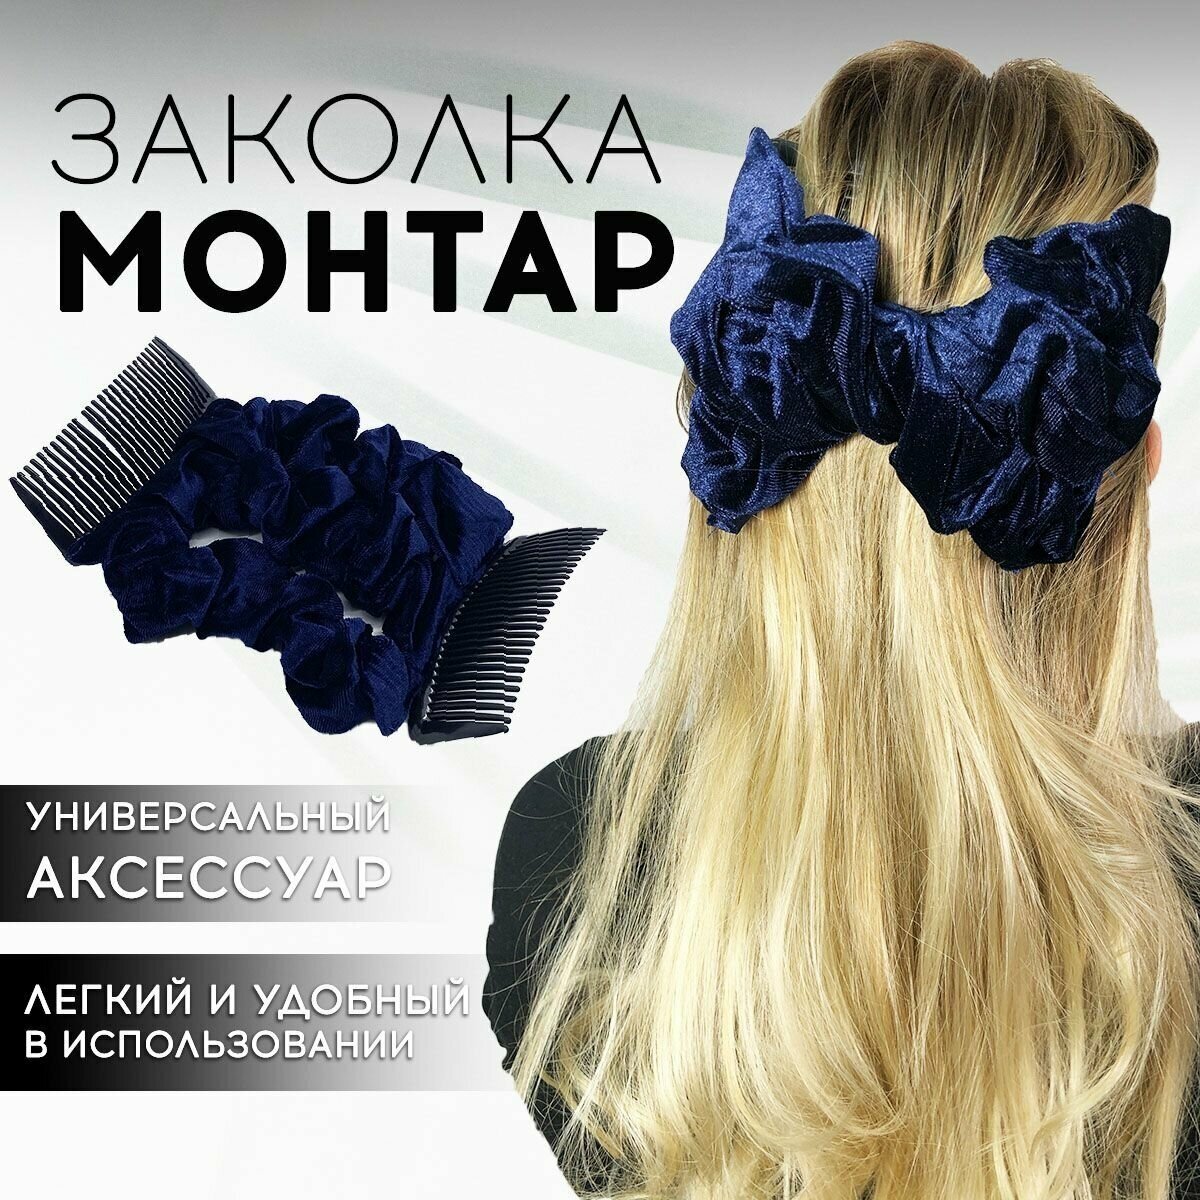 Заколка для волос бархатная "Монтар" синяя/ заколка-гребень / зажим для волос / гребень-монтара